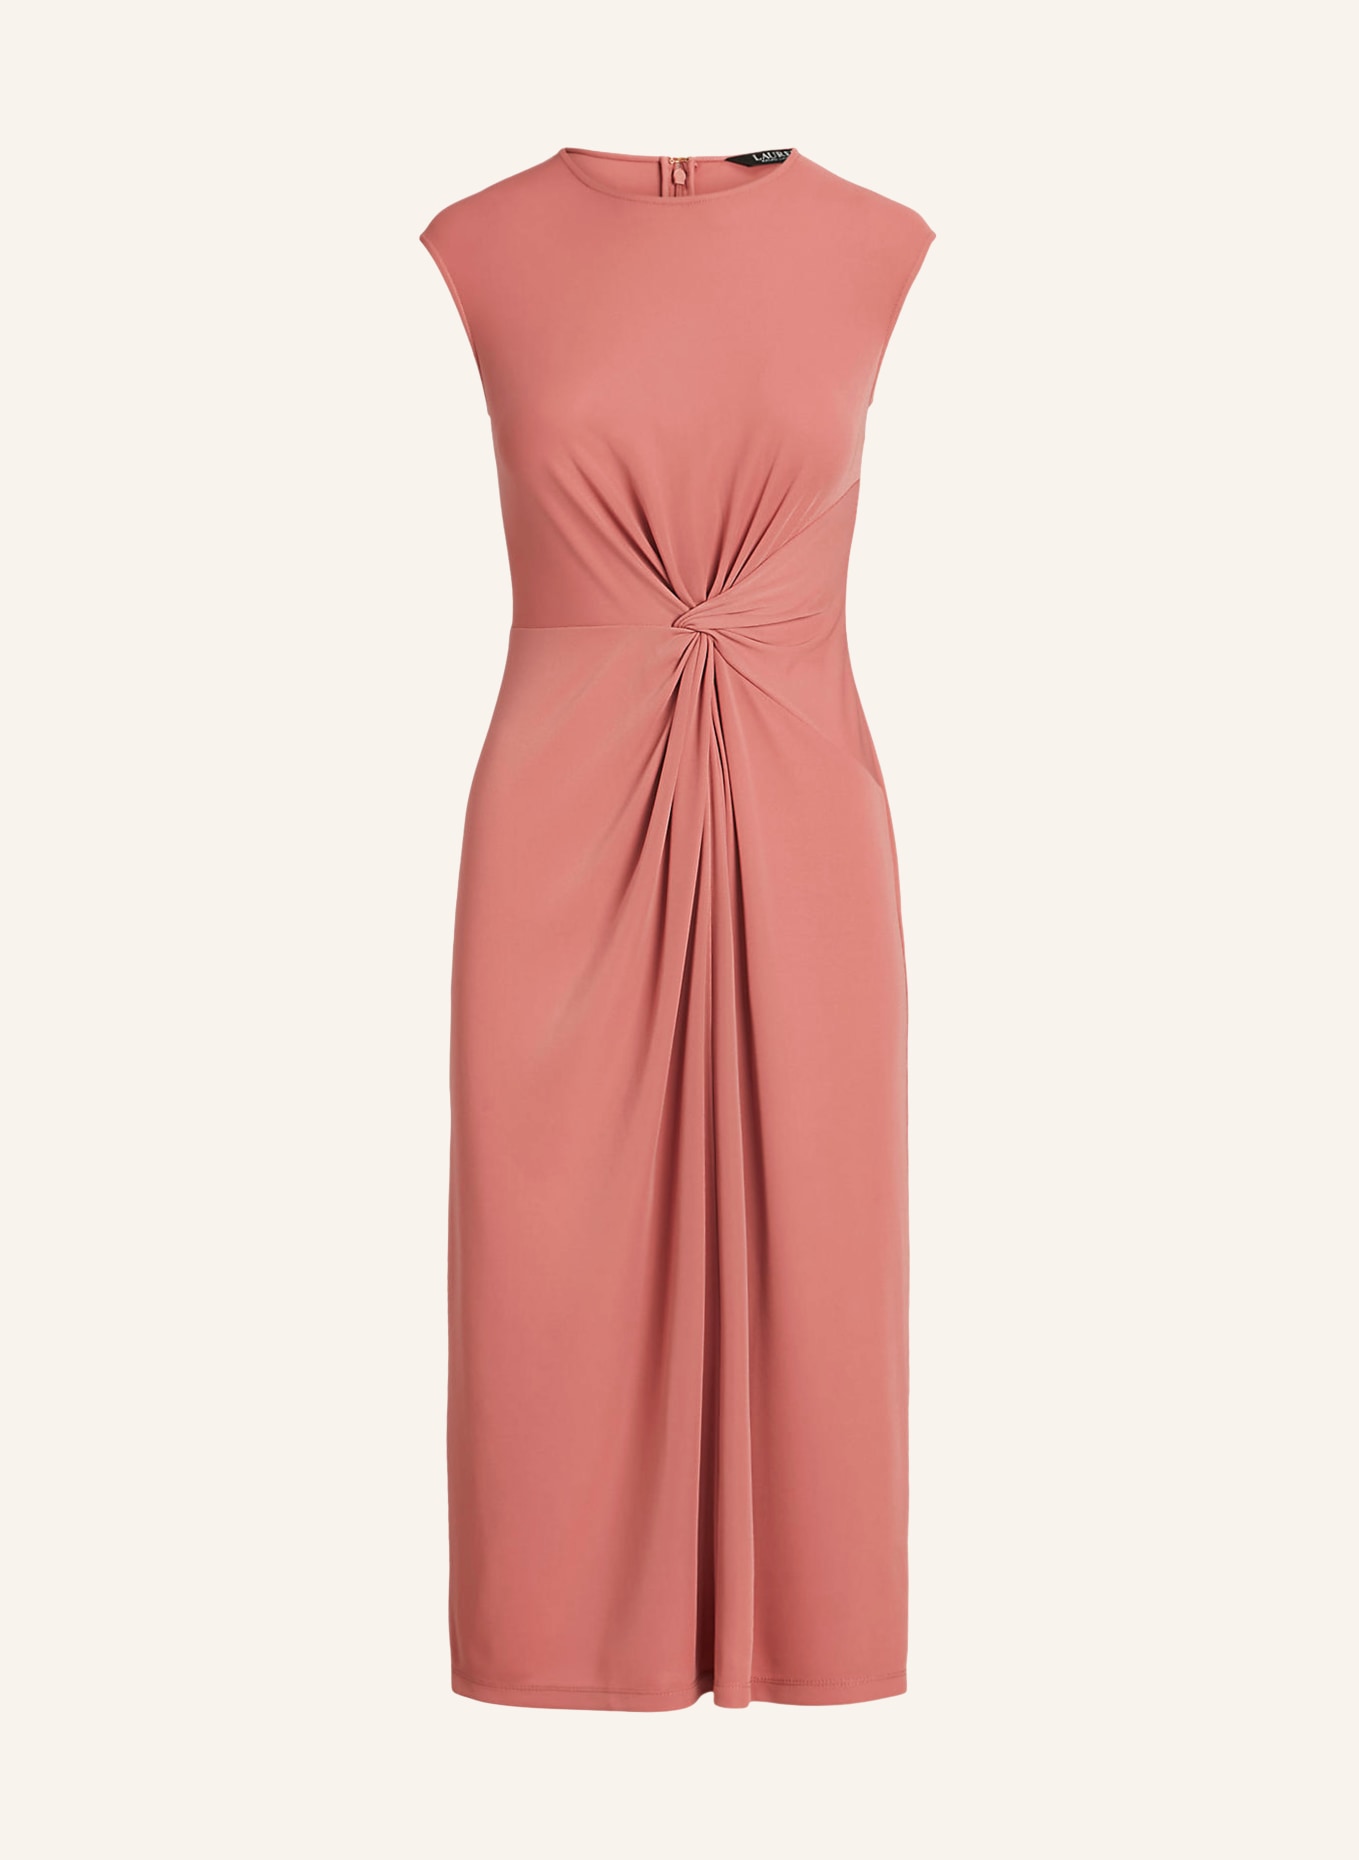 LAUREN RALPH LAUREN Jersey dress, Color: PINK (Image 1)